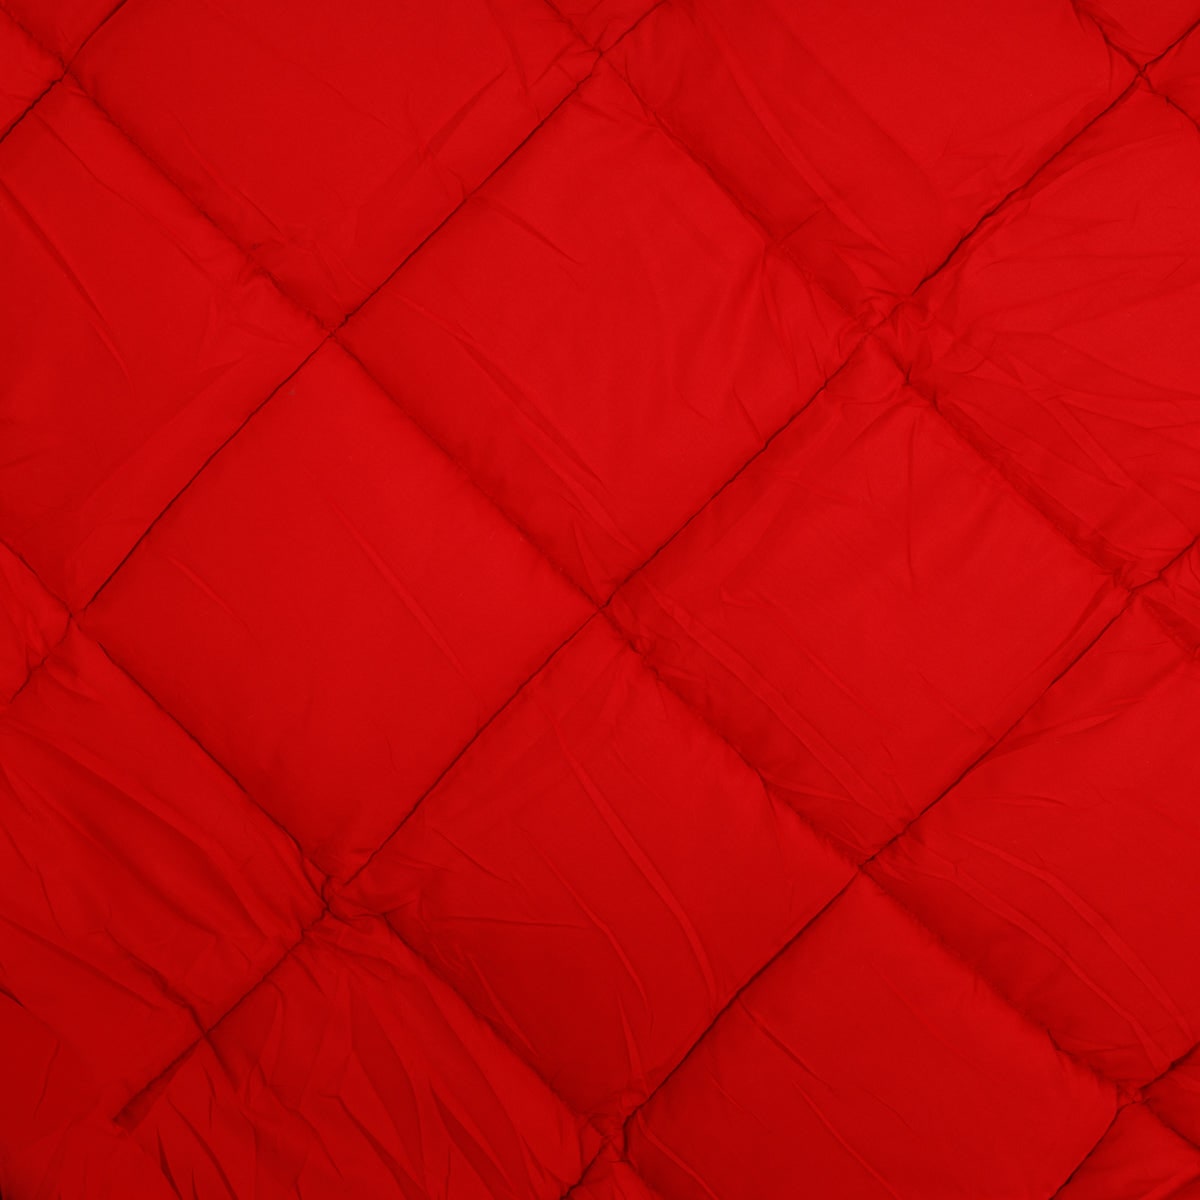 warmteregulerend dekbed luxe rood rood